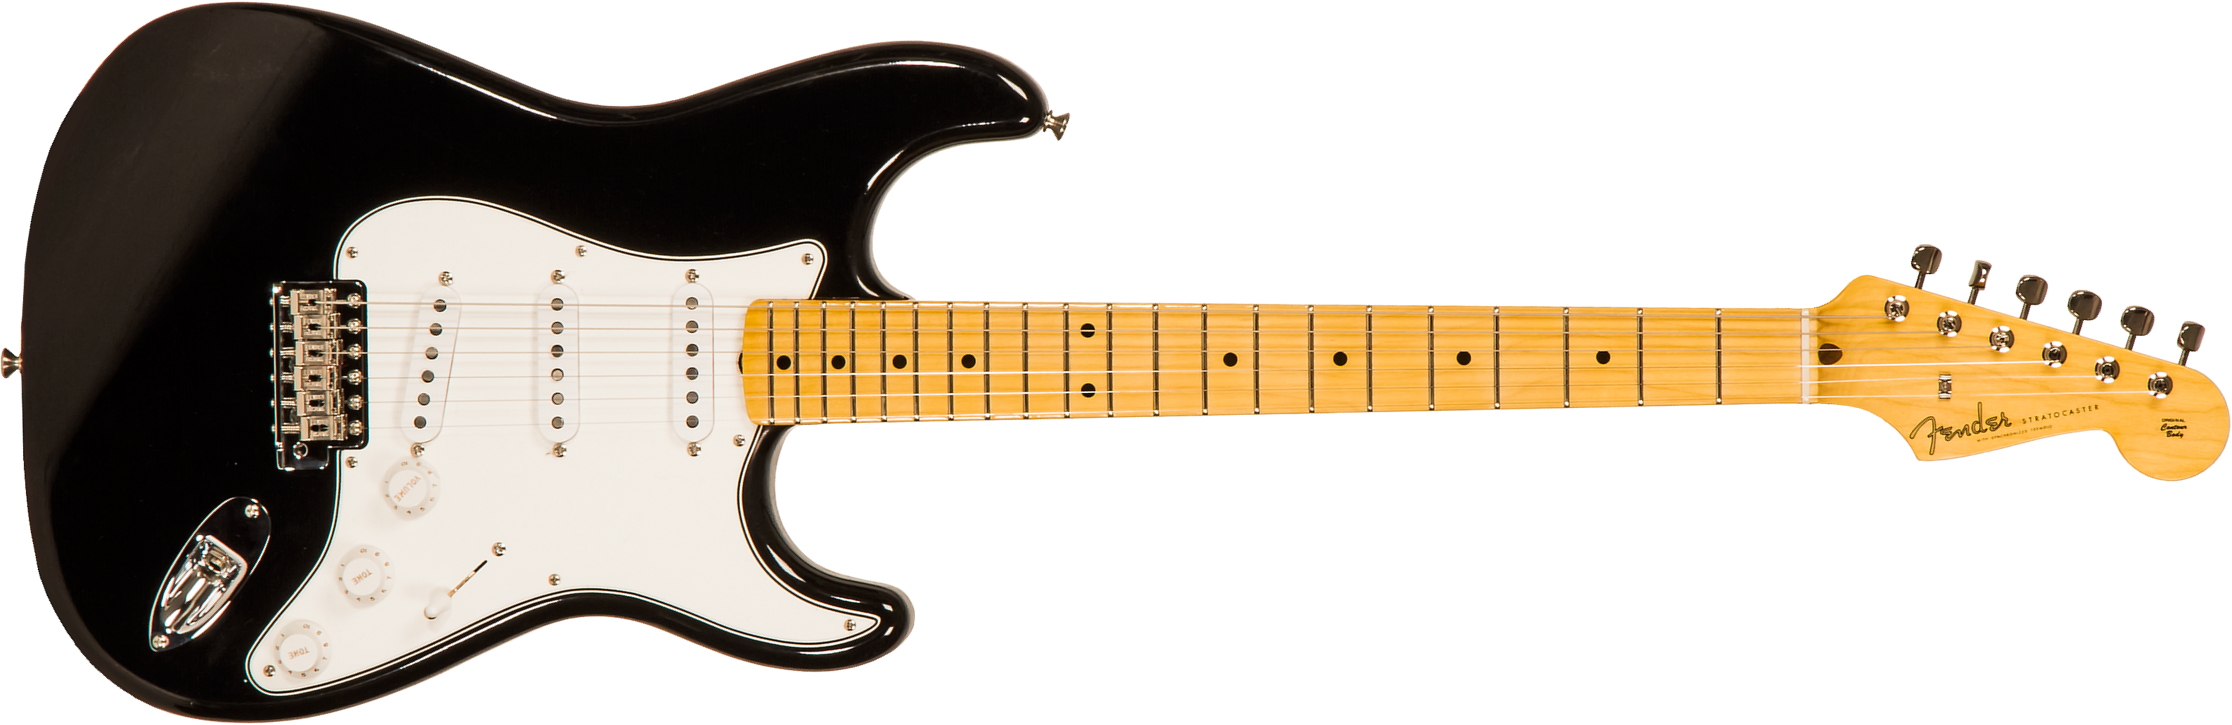 Fender Custom Shop Strat 1958 3s Trem Mn #r113828 - Closet Classic Black - Guitare Électrique Forme Str - Main picture